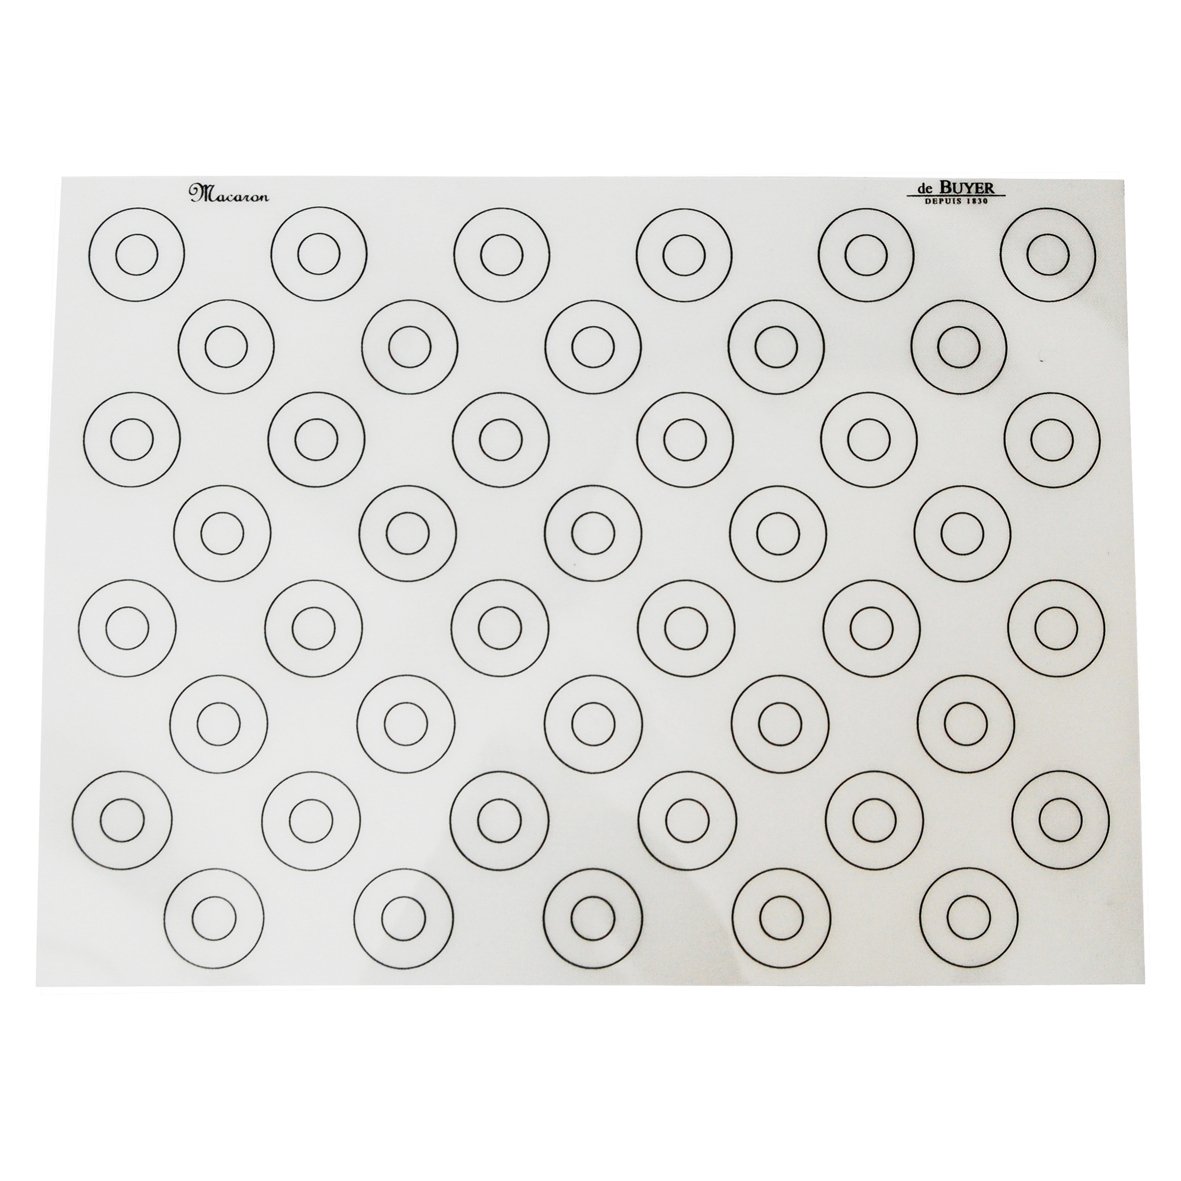 DE BUYER Shell 40 x 30 cm - silikonová podložka na makronky